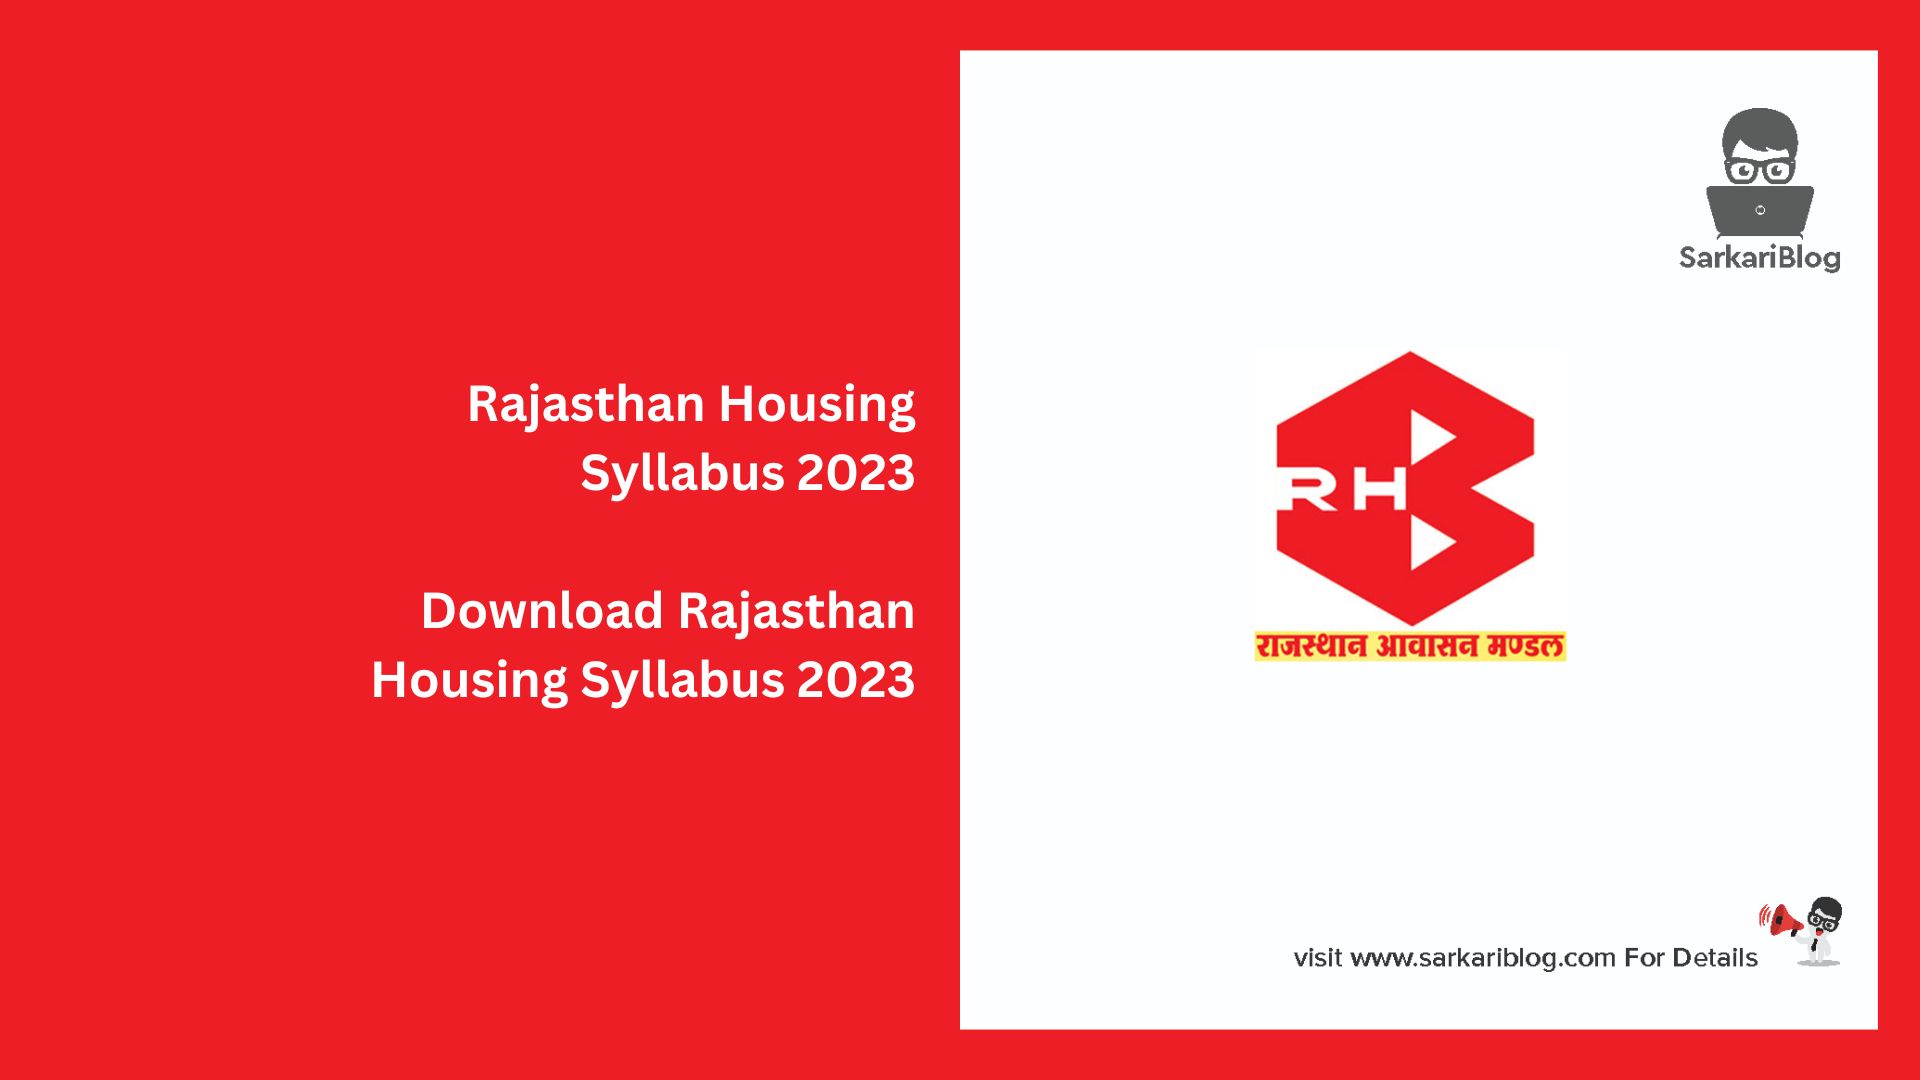 Rajasthan Housing Syllabus 2023